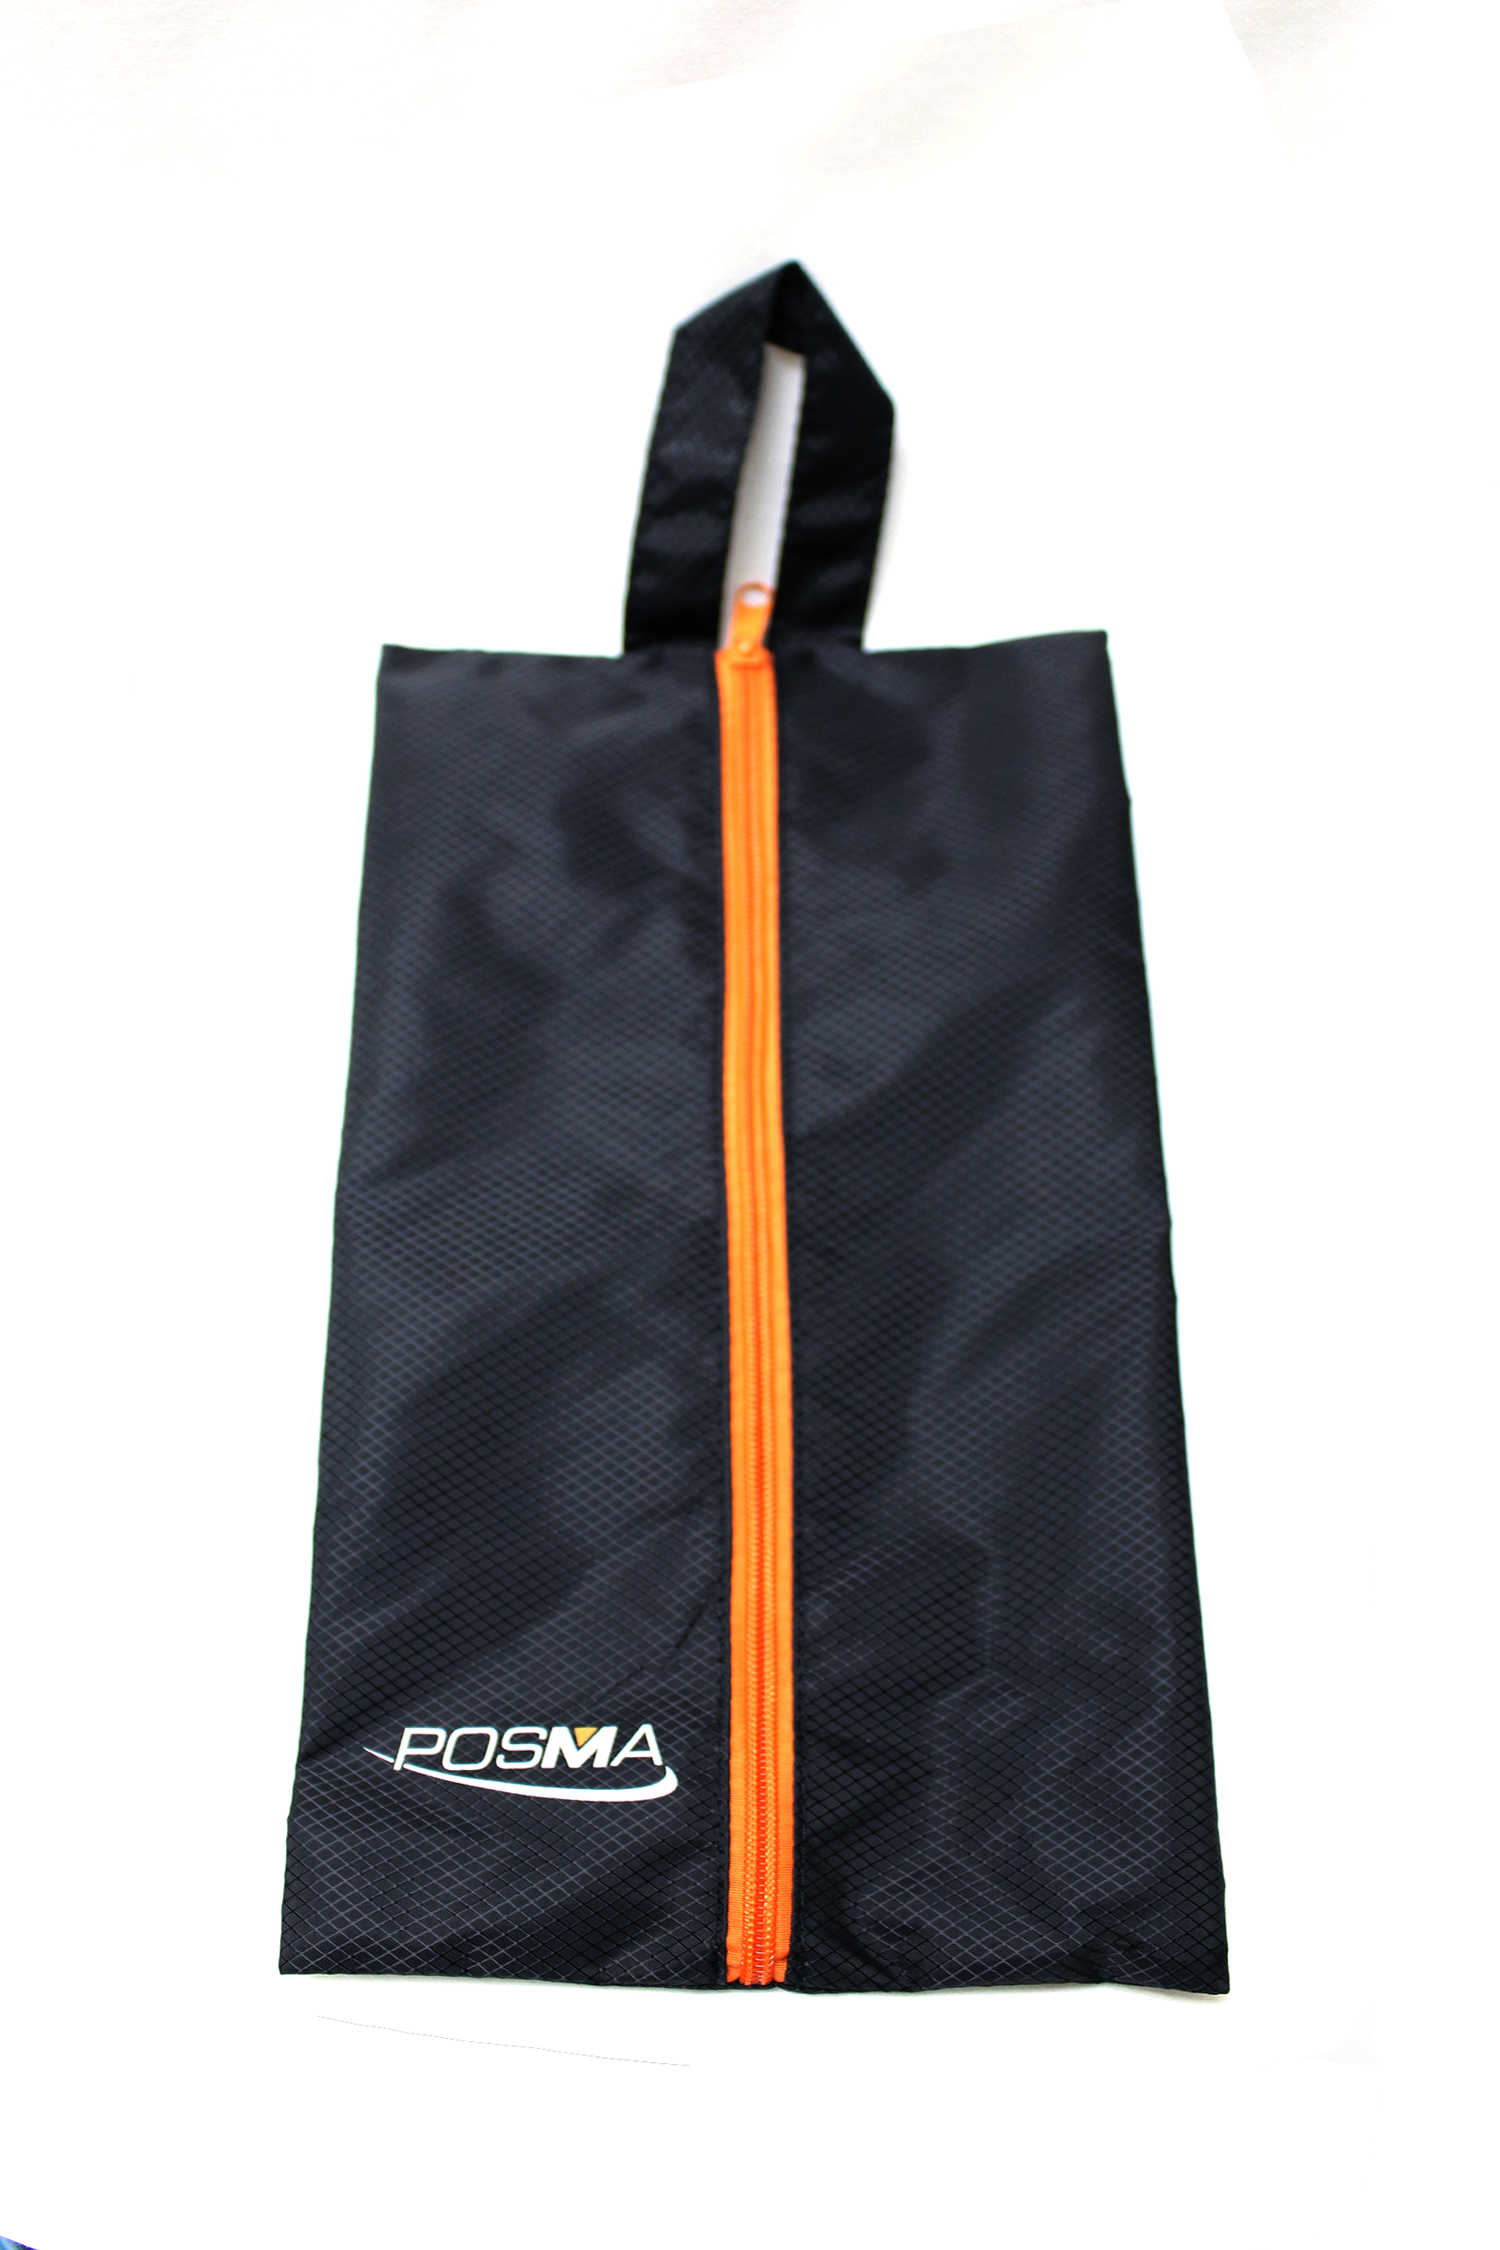 Posma SB030T 3款高爾夫球鞋包+高爾夫球鞋拔釘器+高爾夫球鞋清潔刷+Posma 黑色束口後背包